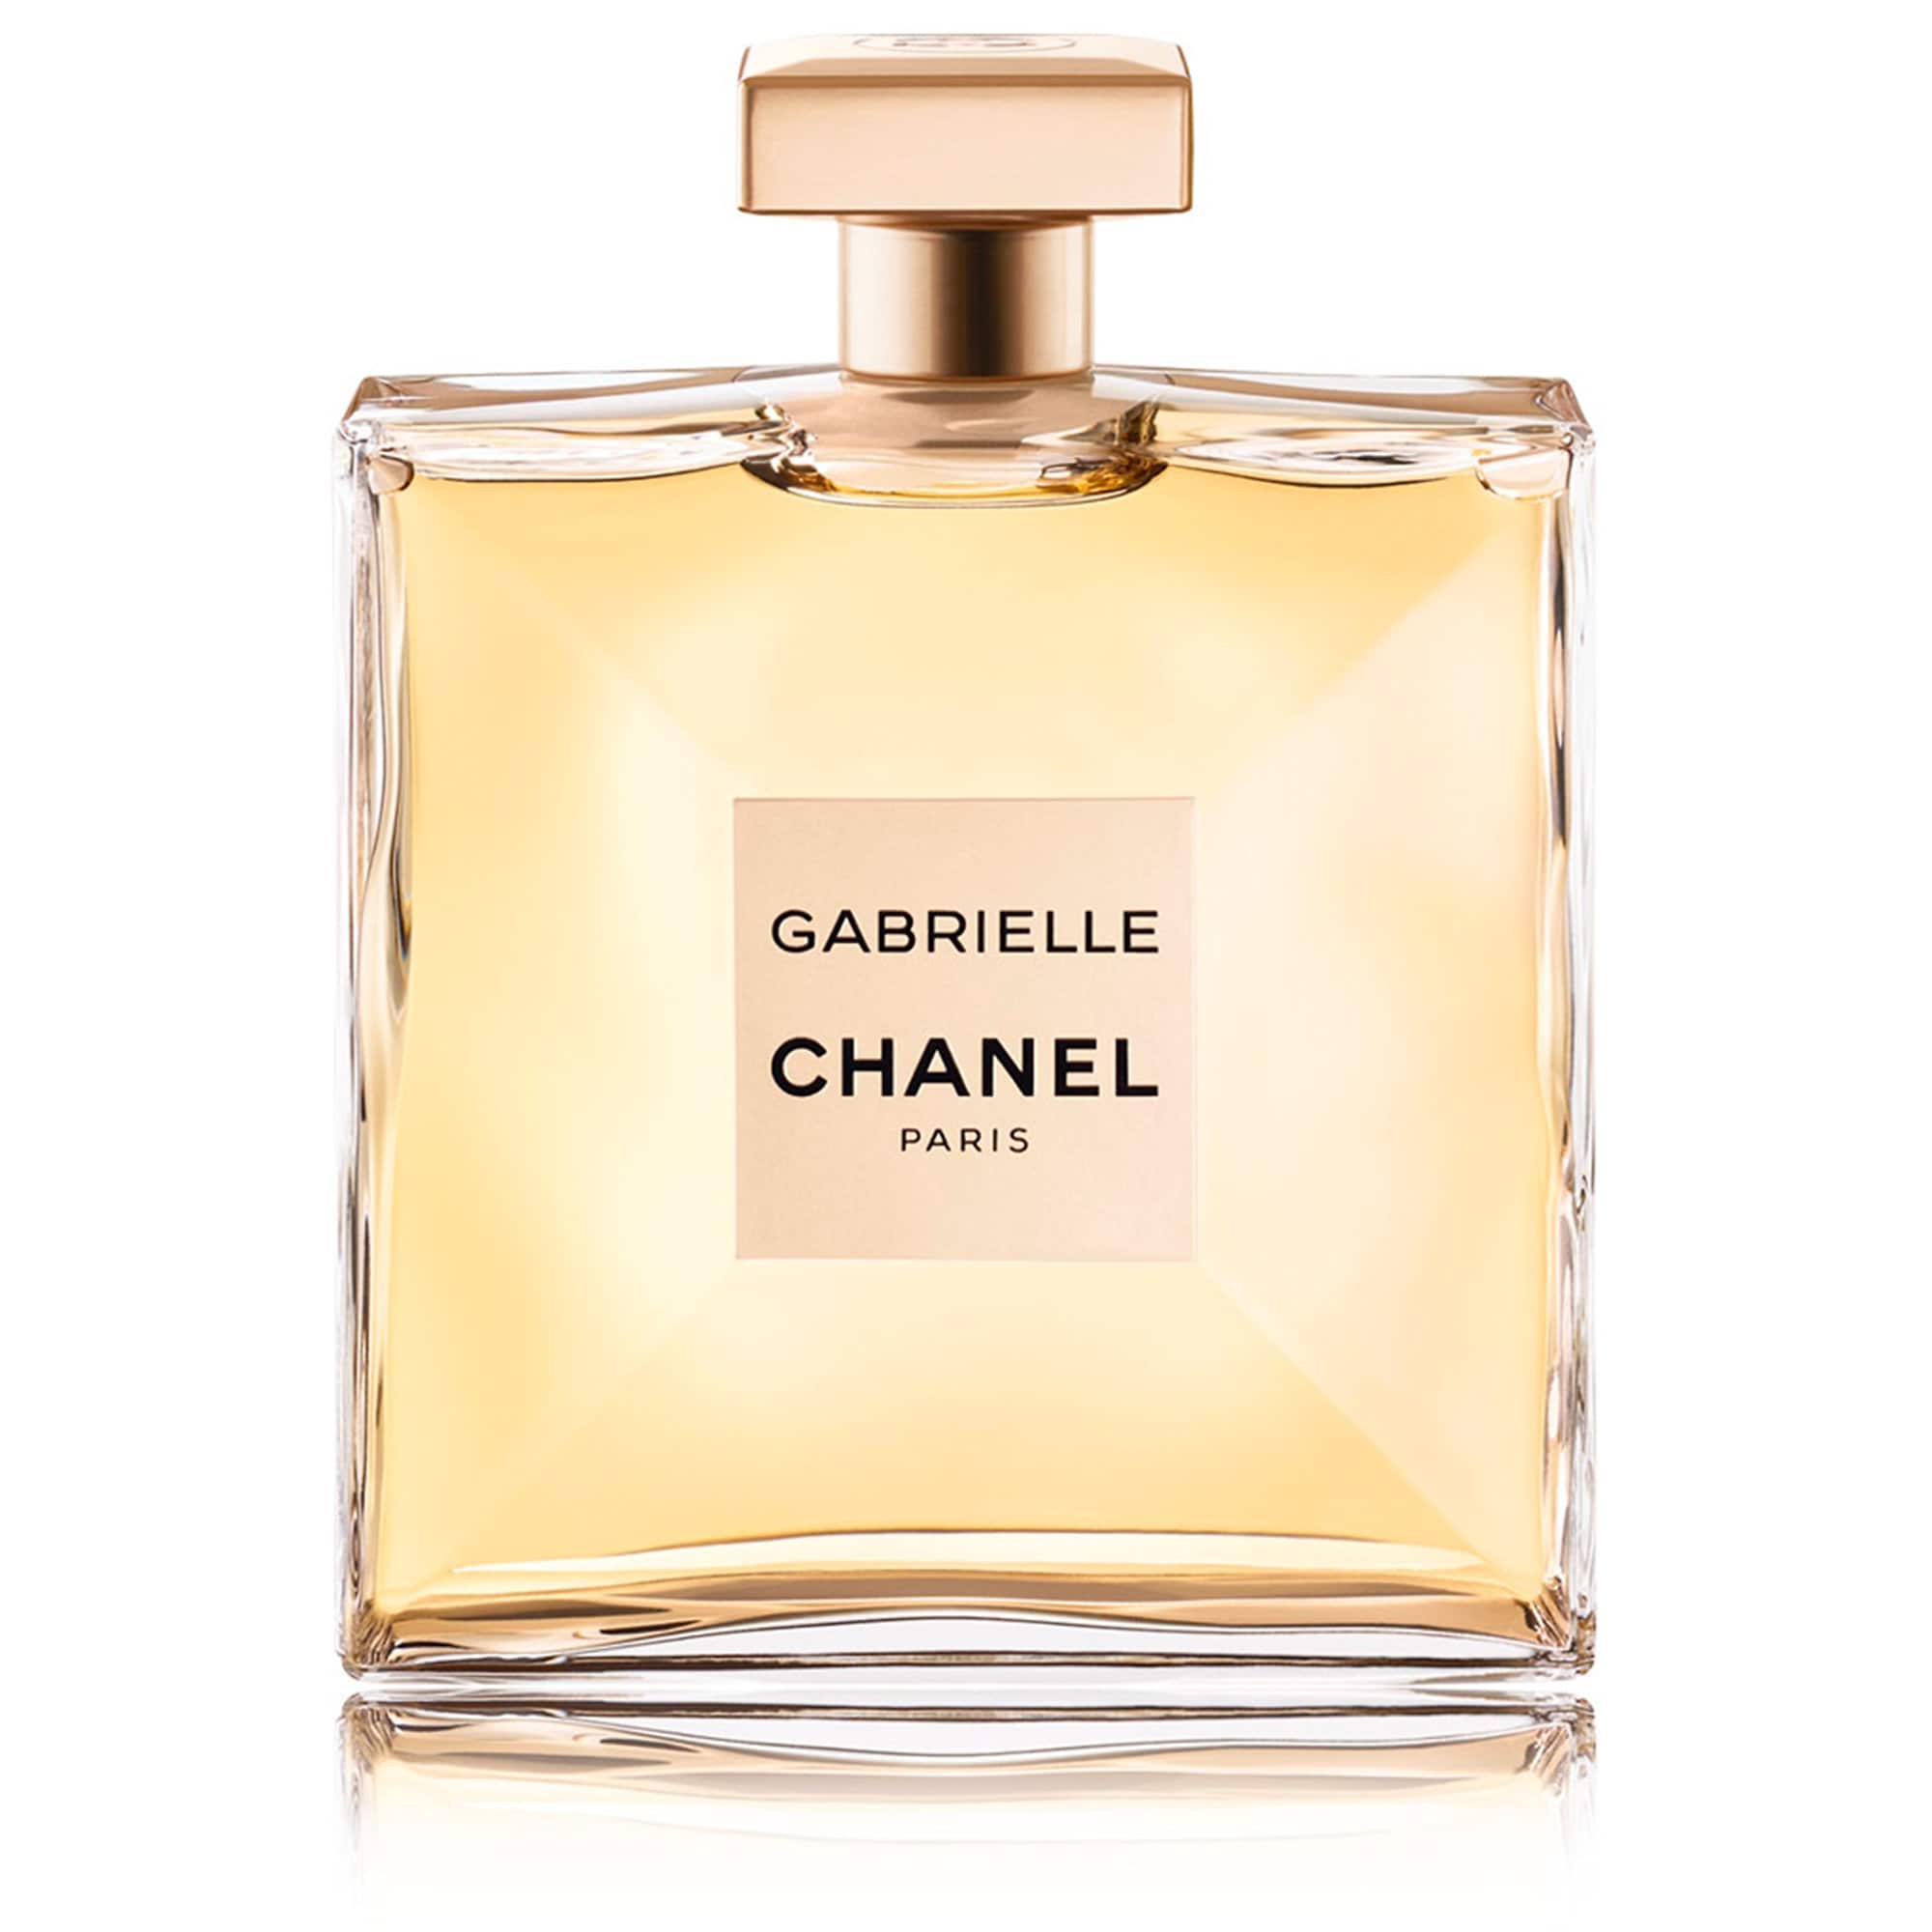 Gabrielle Chanel Paris Logo - GABRIELLE CHANEL Eau de Parfum